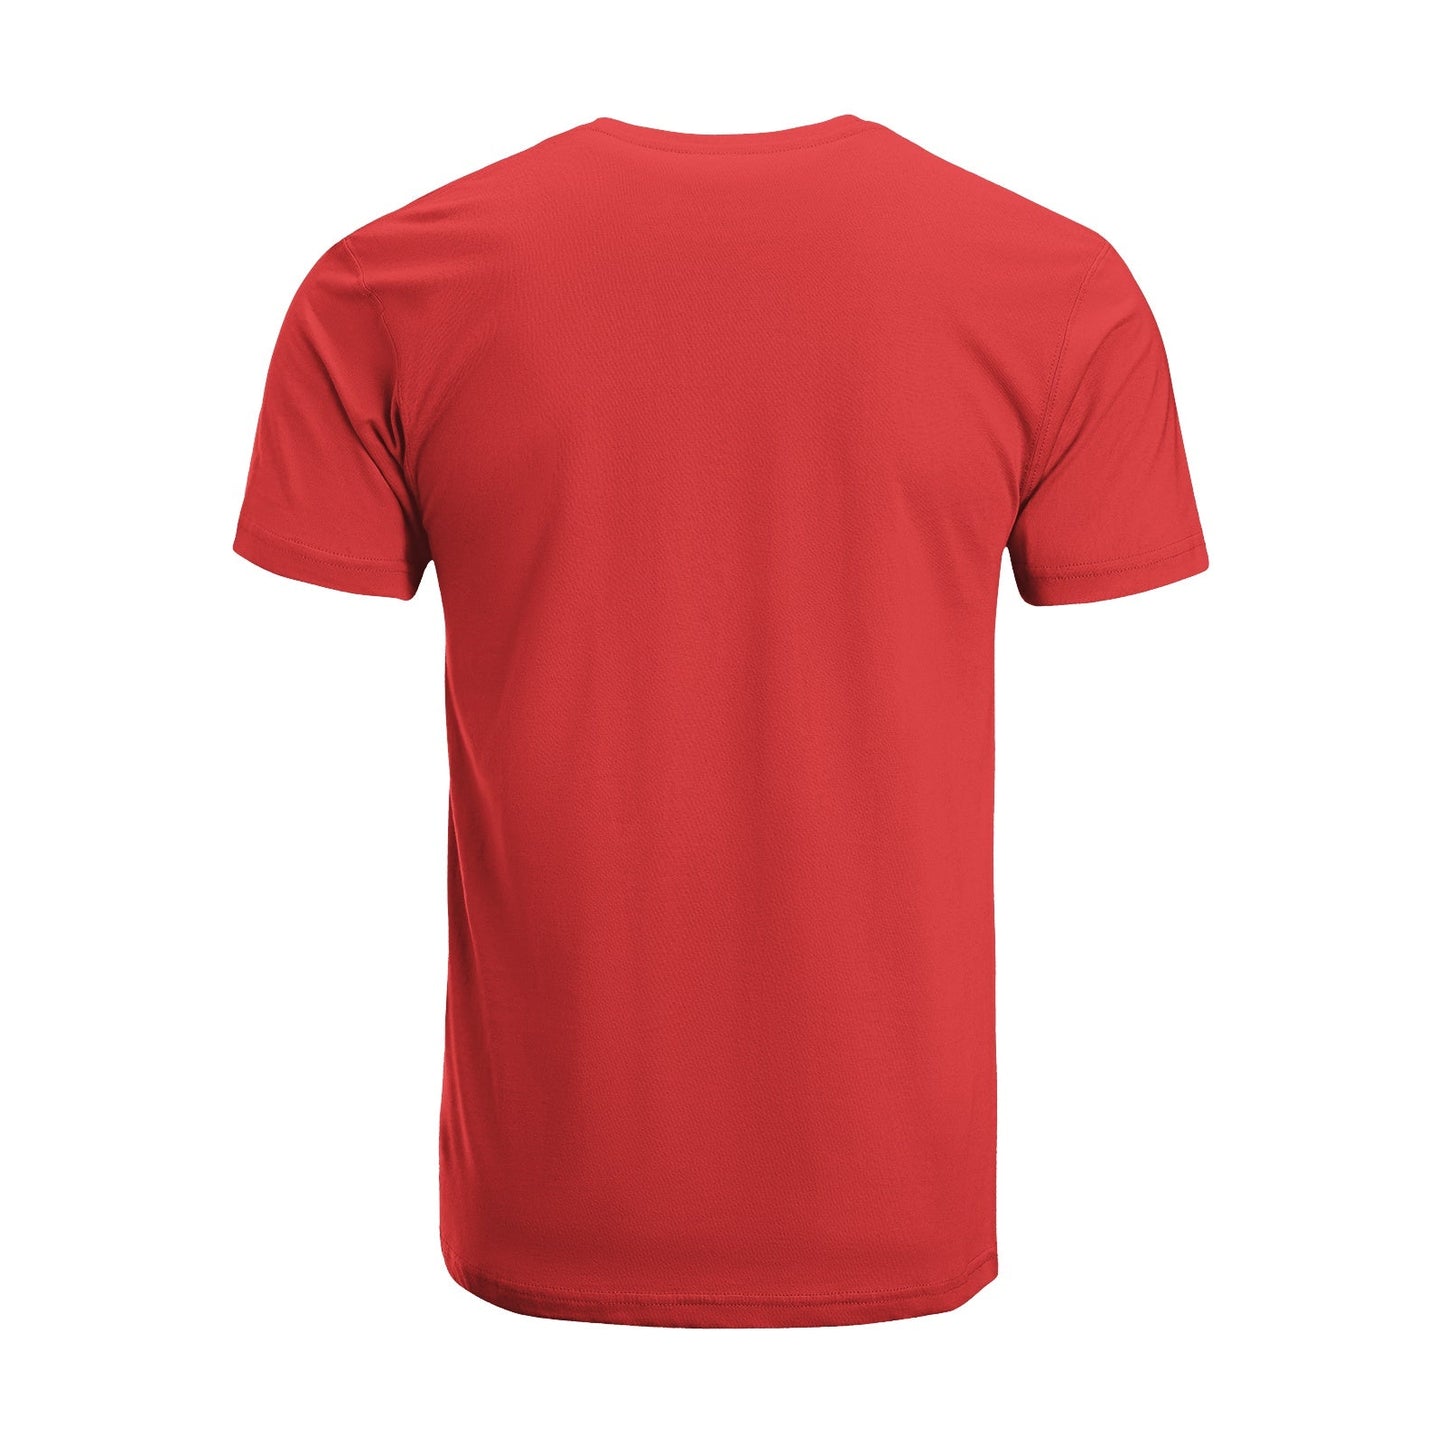 Unisex Short Sleeve Crew Neck Cotton Jersey T-Shirt TRUCK 23